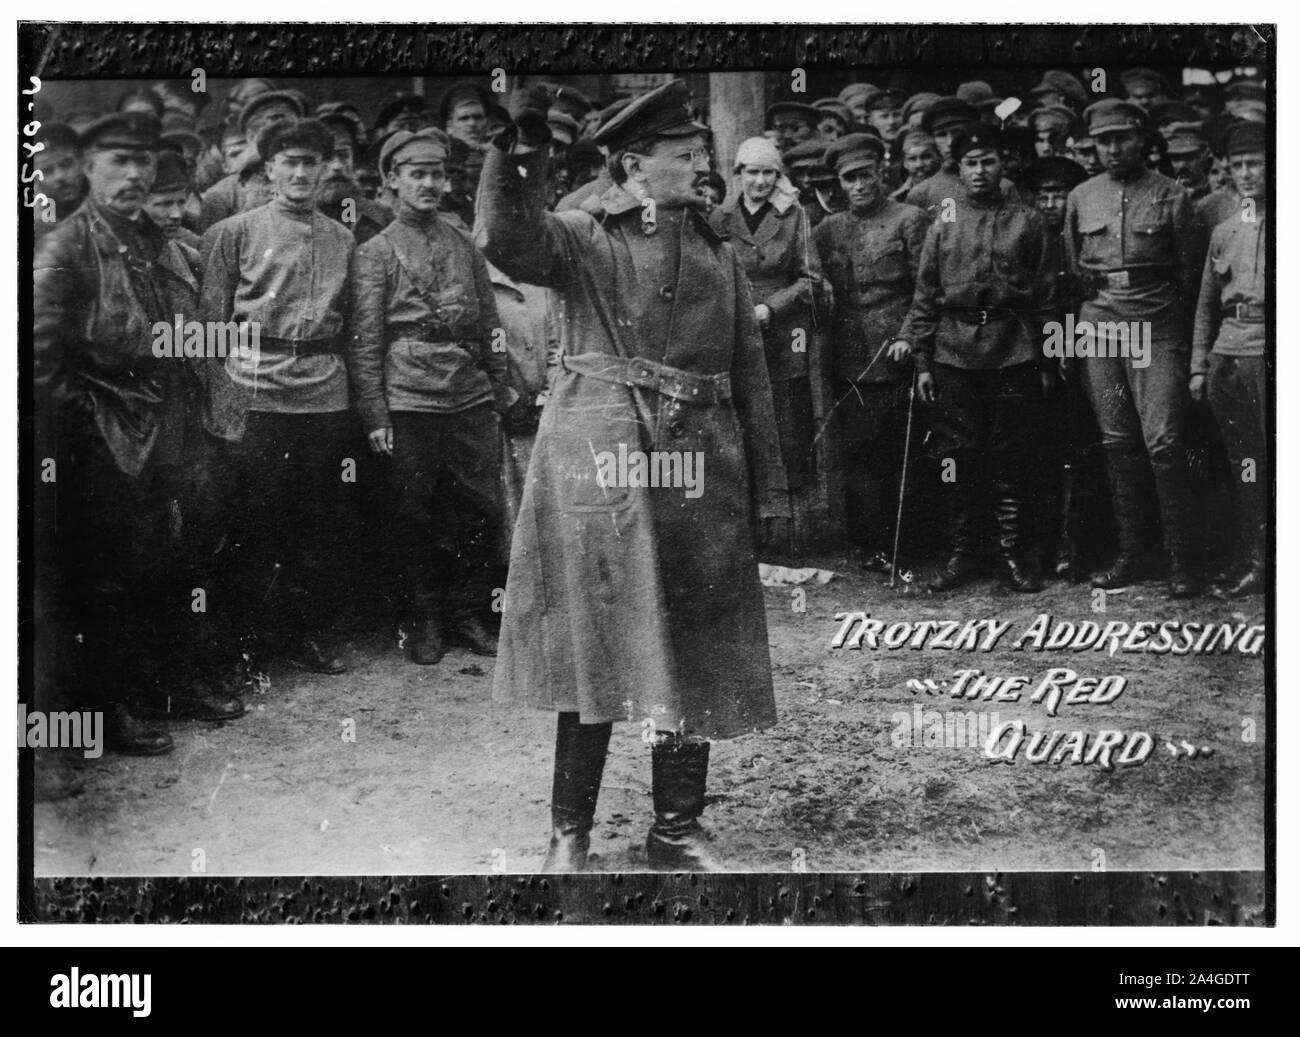 Trotzki] d. h. Trotzki] Adressierung der Roten Garde Stockfoto